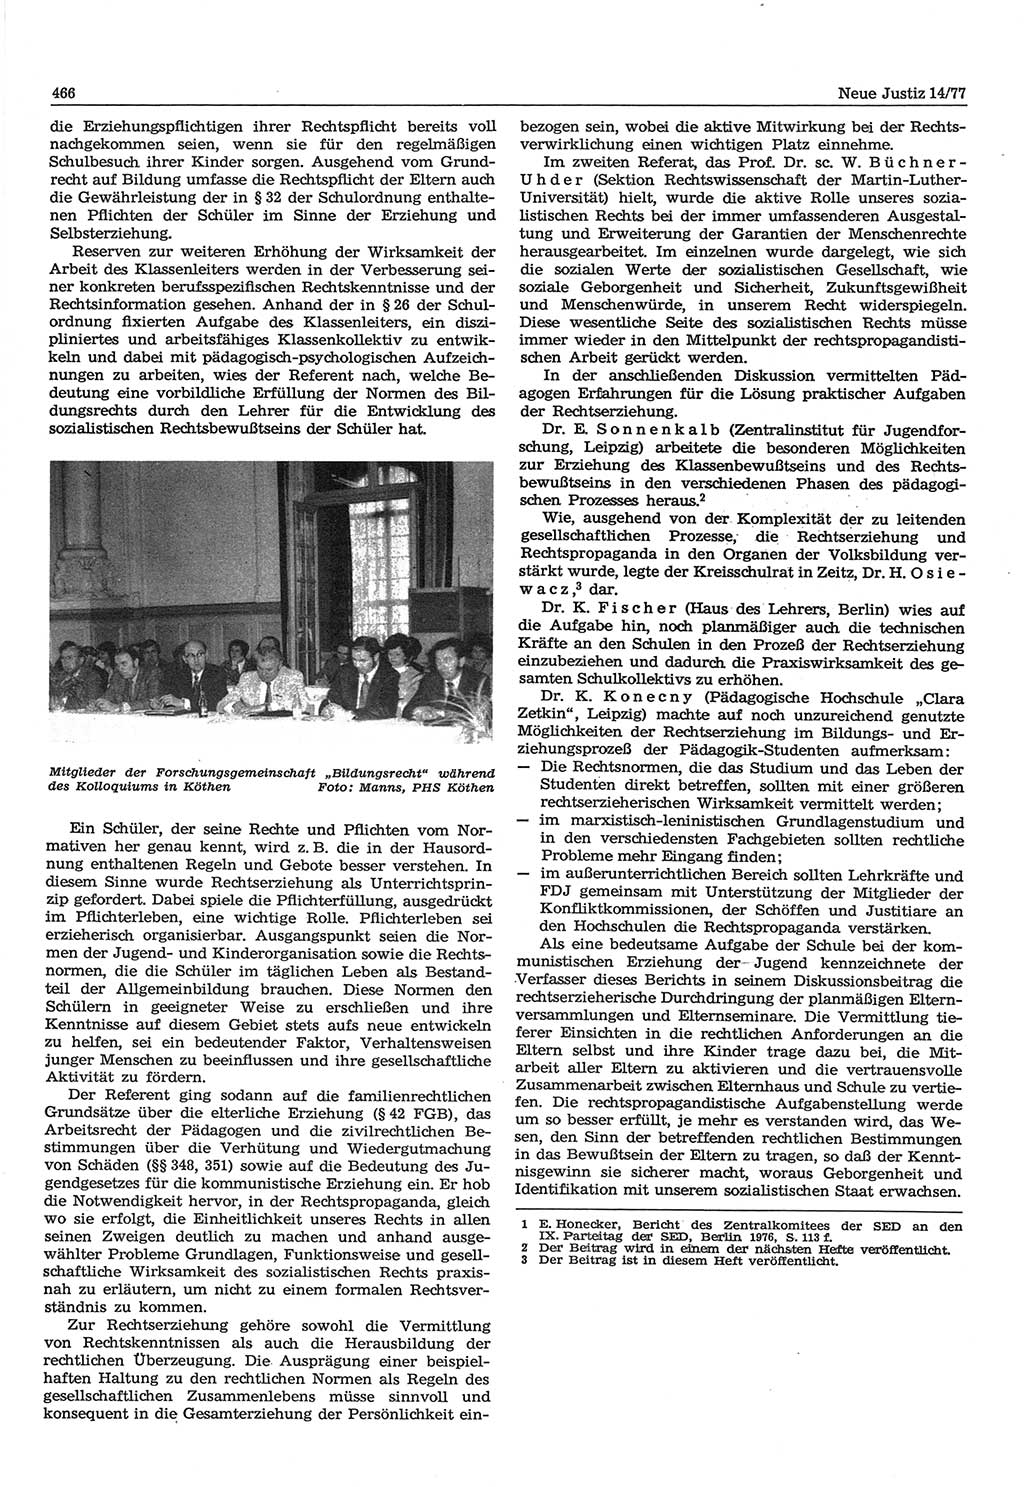 Neue Justiz (NJ), Zeitschrift für Recht und Rechtswissenschaft-Zeitschrift, sozialistisches Recht und Gesetzlichkeit, 31. Jahrgang 1977, Seite 466 (NJ DDR 1977, S. 466)